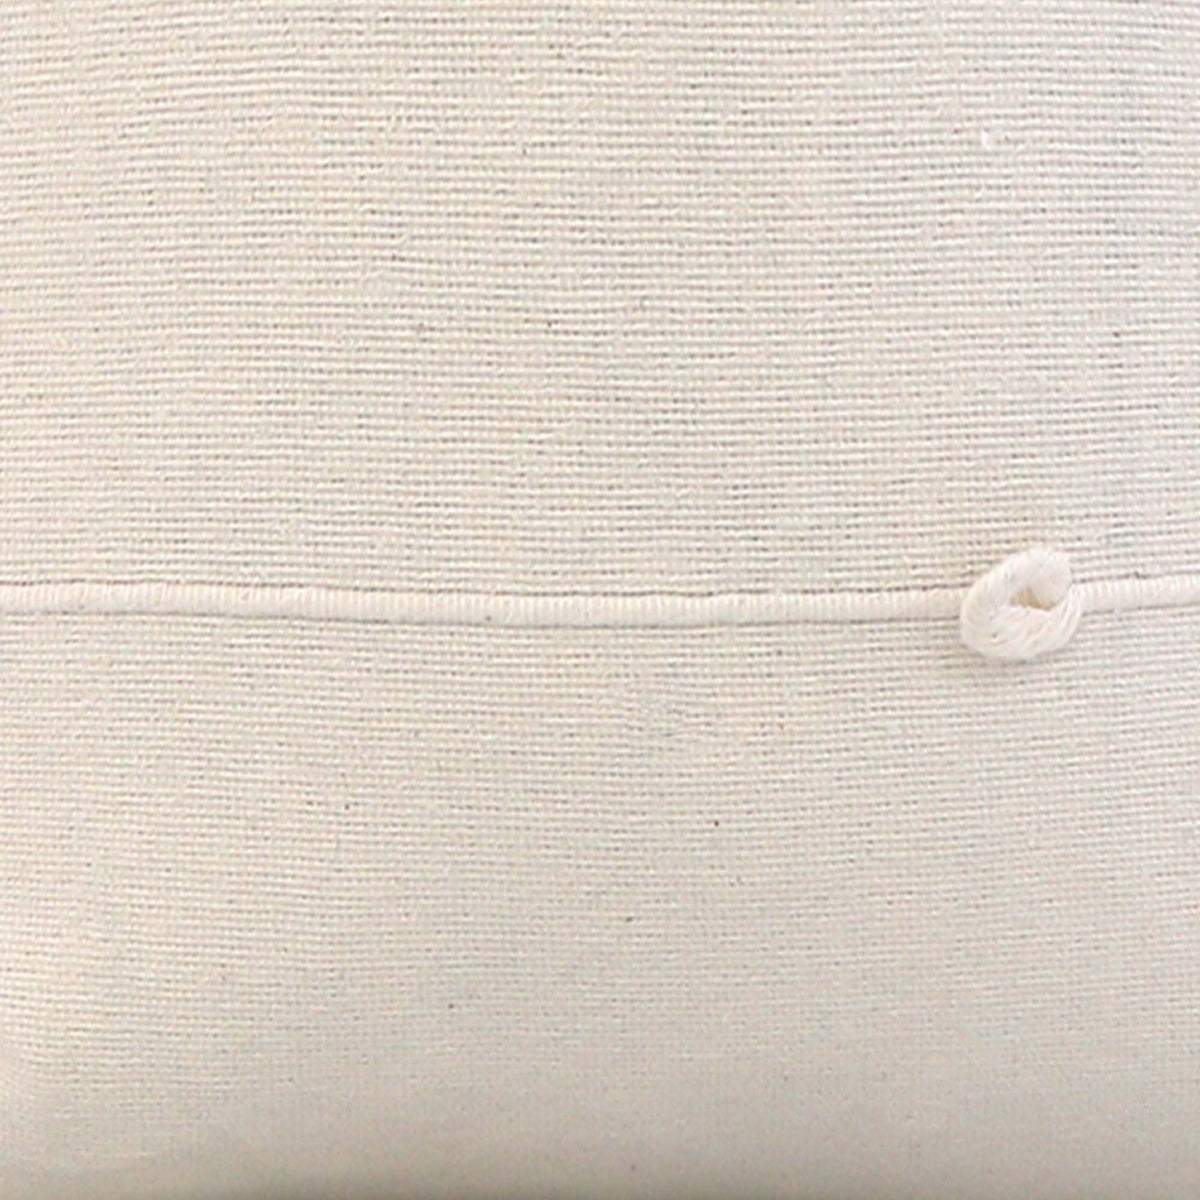 Globo White Stripe / 4x4 inch Fabric Swatch